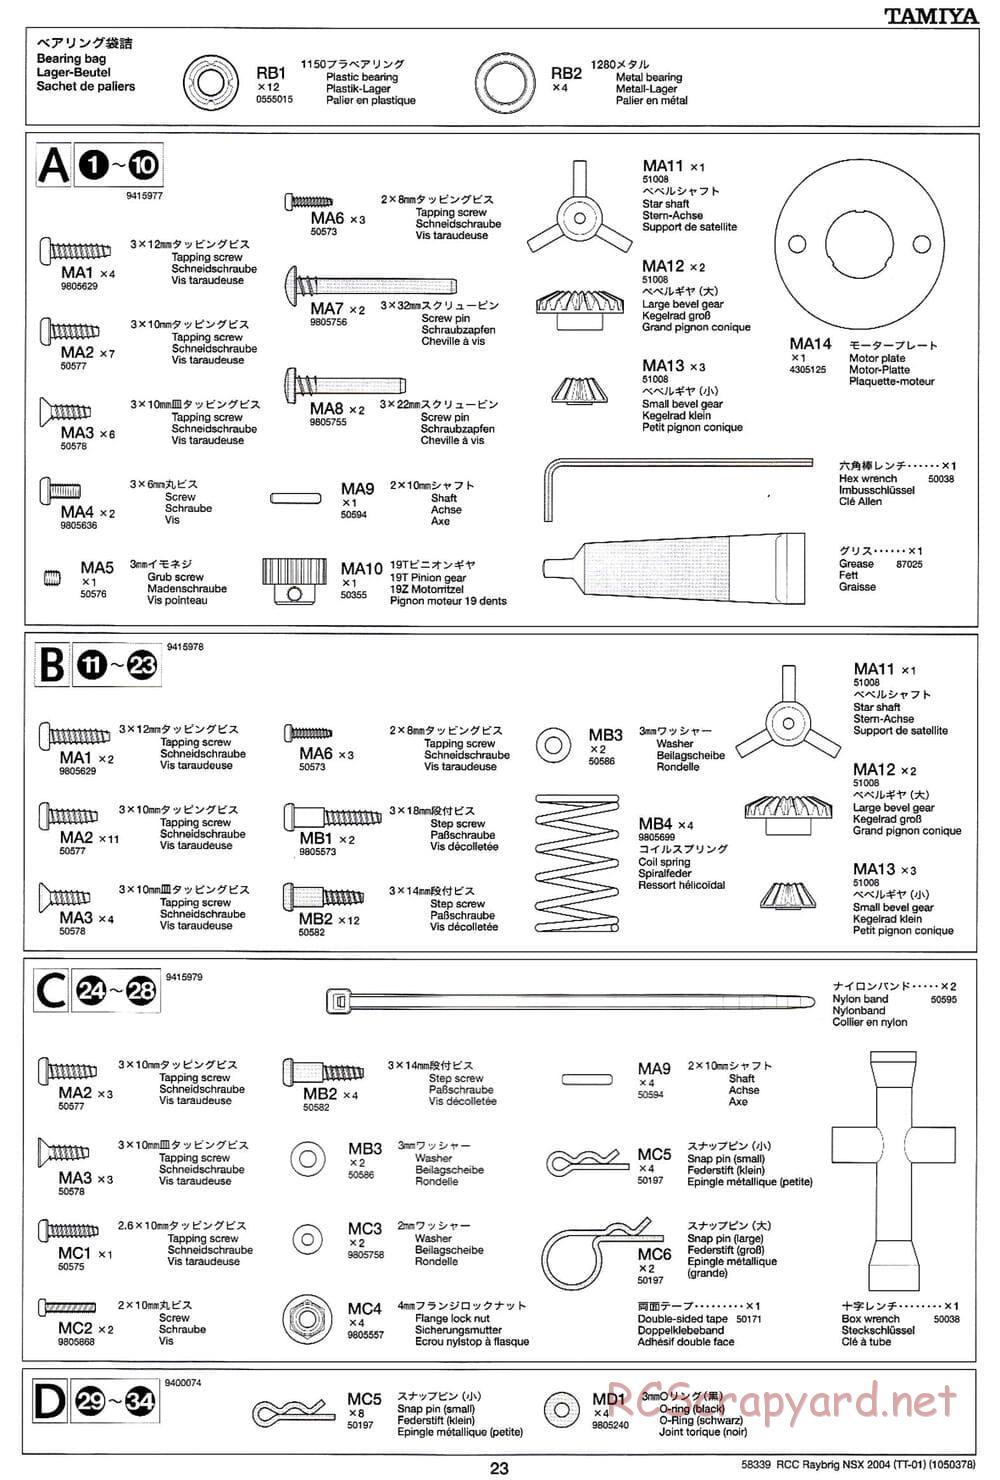 Tamiya - Raybrig NSX 2004 Chassis - Manual - Page 23